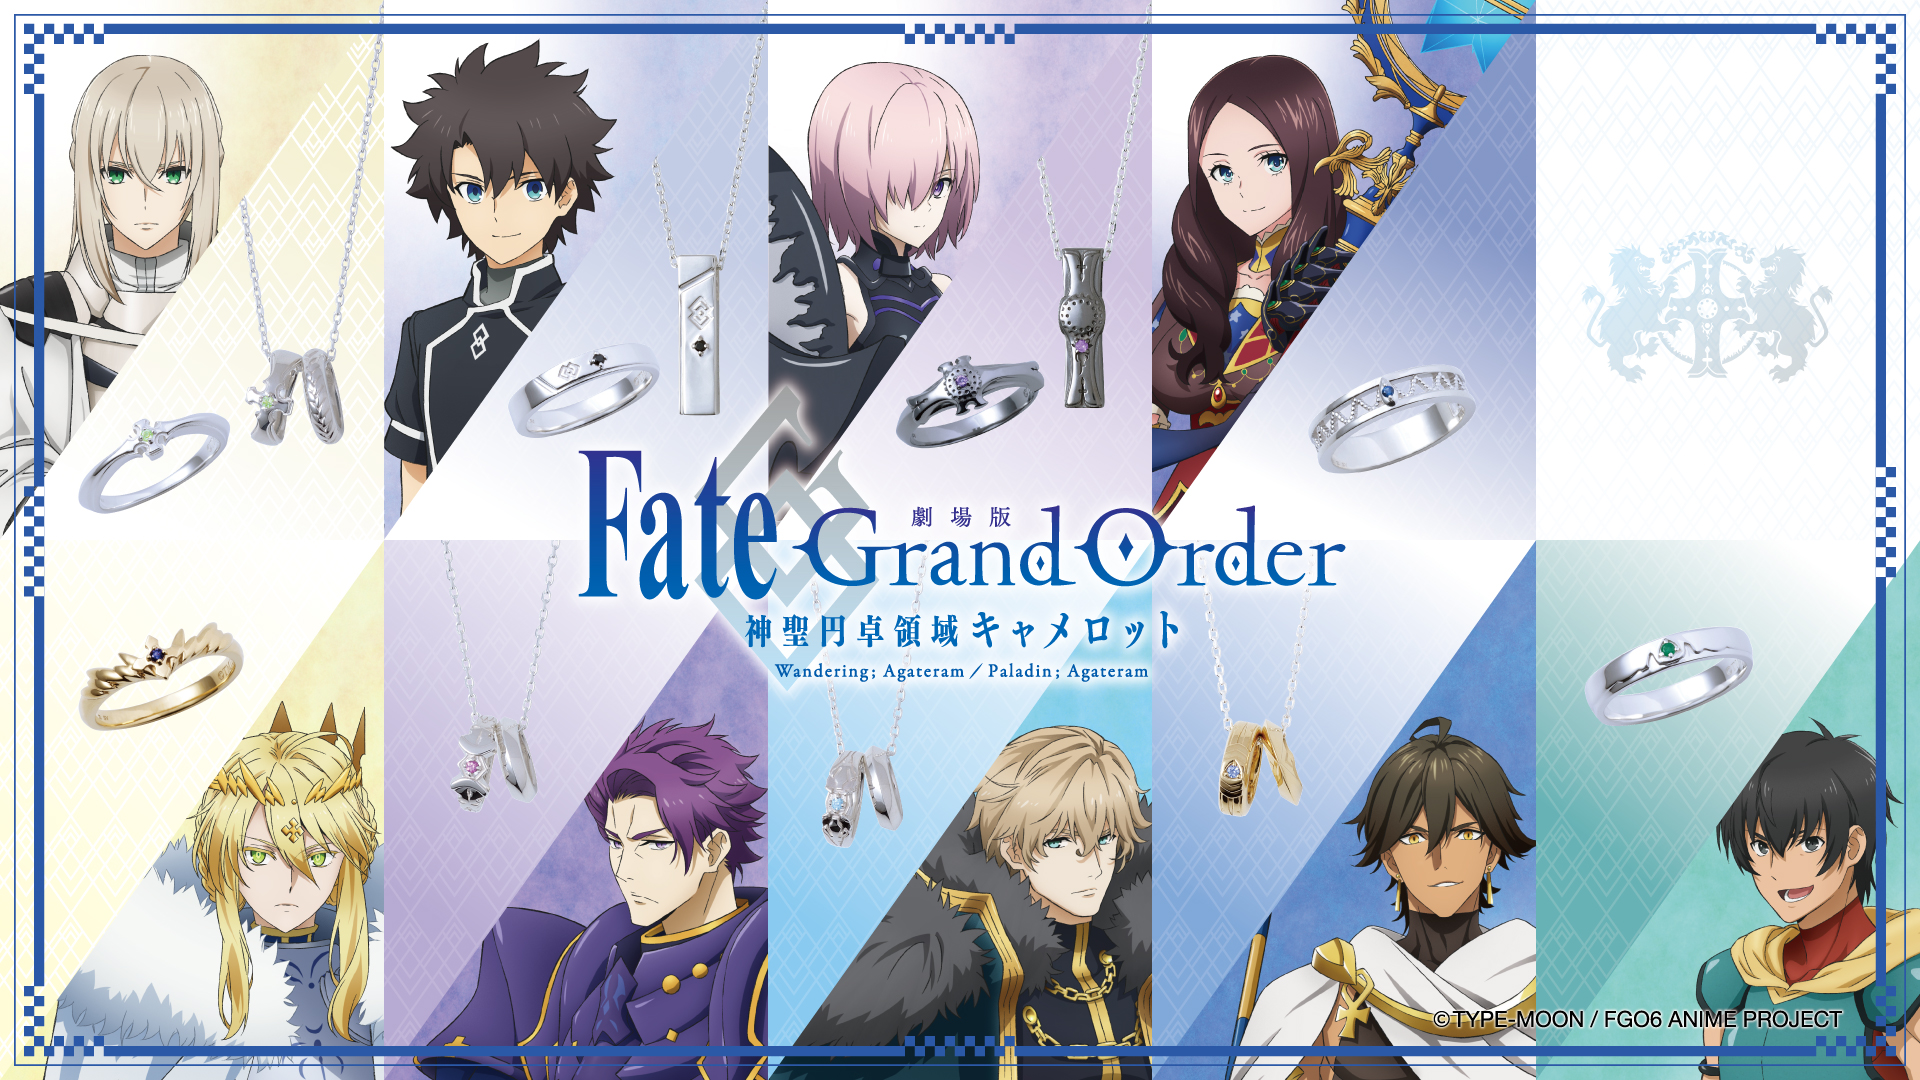 劇場版 Fate Grand Order 神聖円卓領域キャメロット コラボジュエリー 4 28 水 から受注開始 Newscast